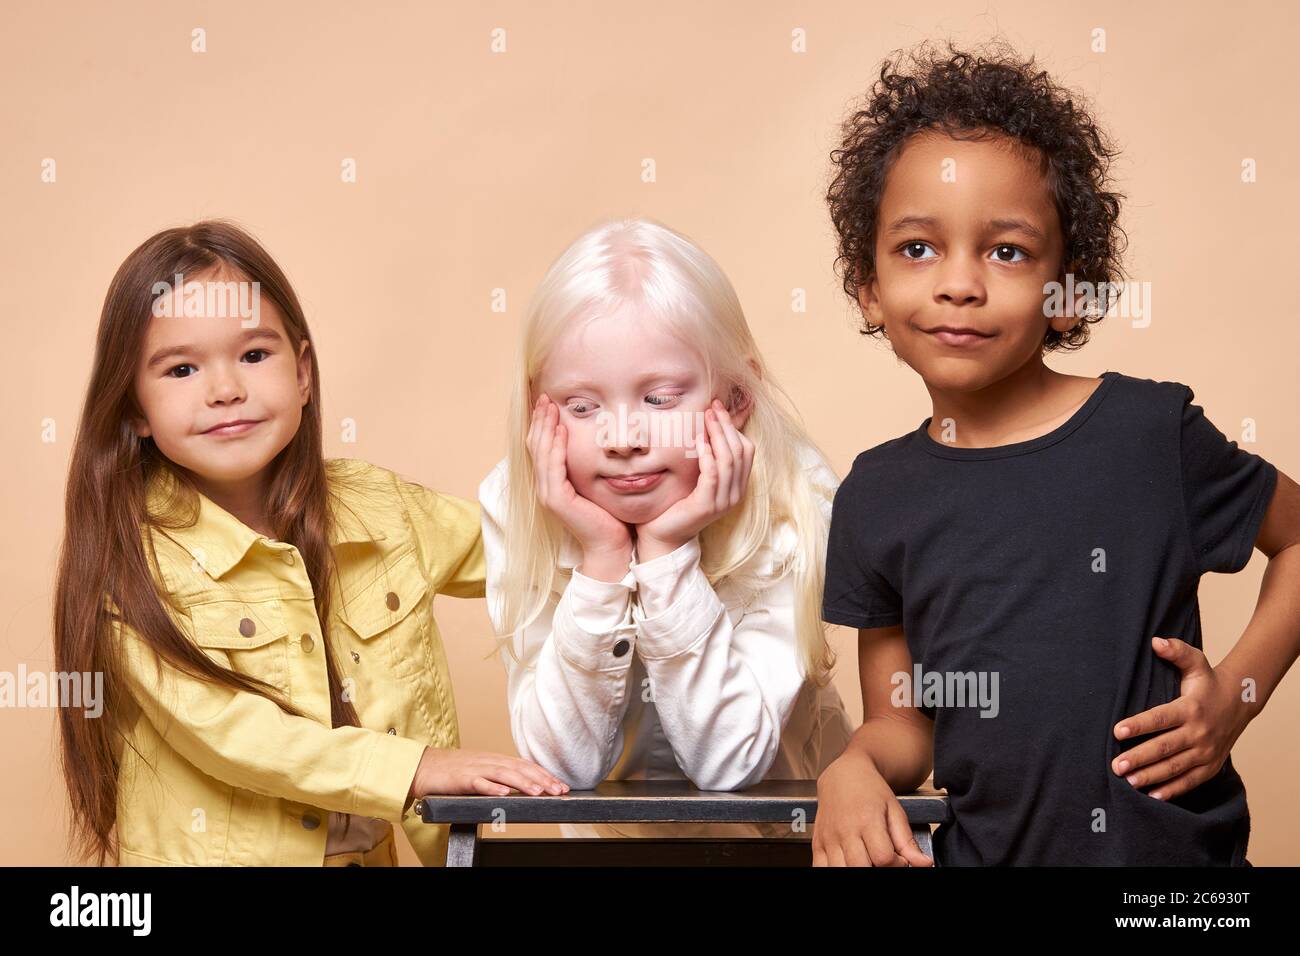 portrait de divers beaux enfants. albino, les enfants africains et américains ensemble. la diversité d'apparence n'est pas un obstacle pour l'amitié de la enfantine Banque D'Images